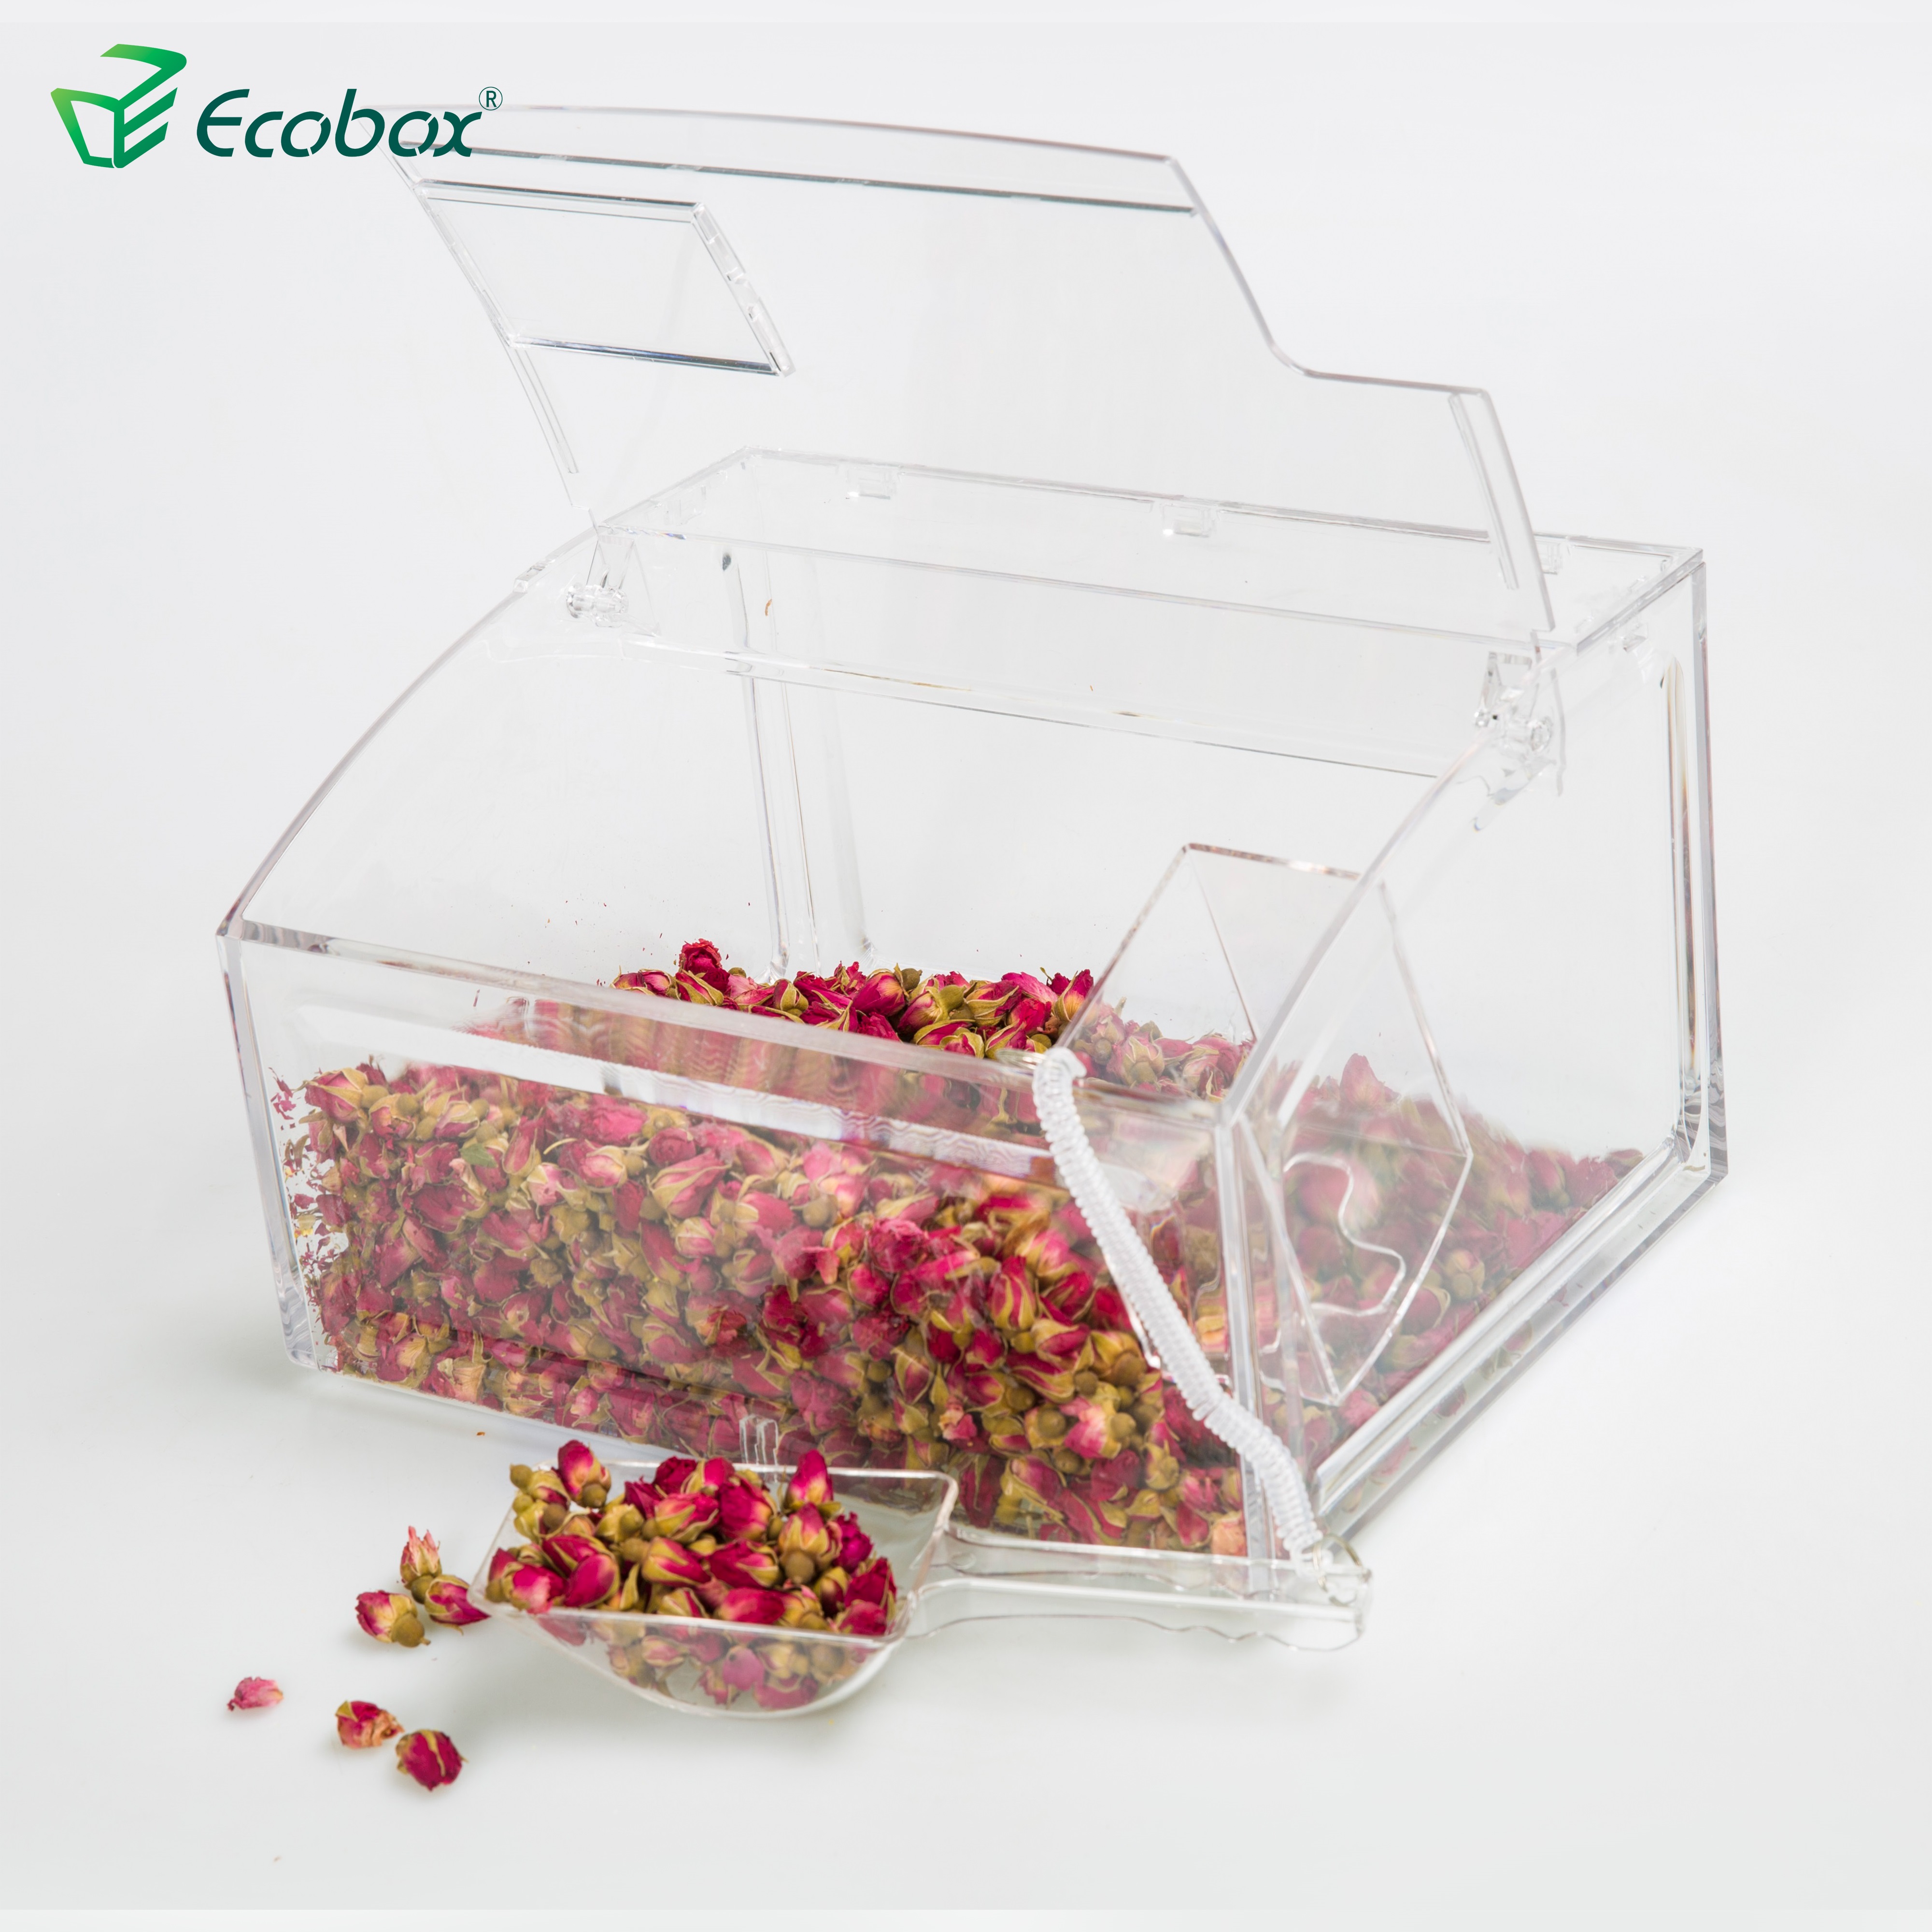 Ecobox Ecofriendly SPH-007 Cubo de basura para supermercado a granel para tienda 